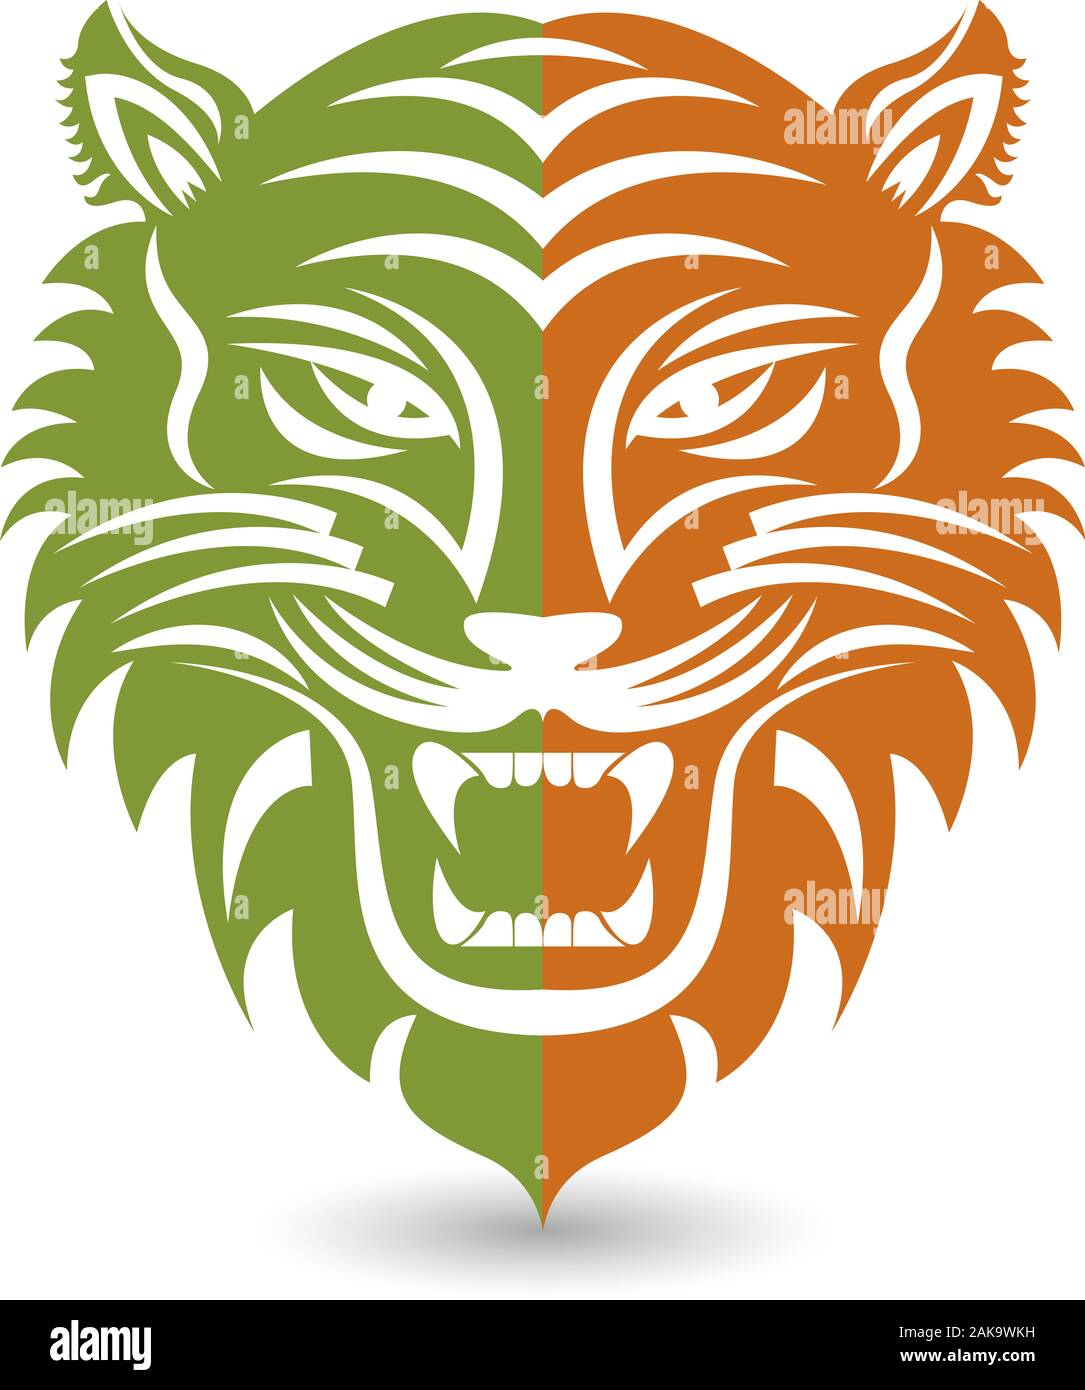 Lion logo Stock Photo